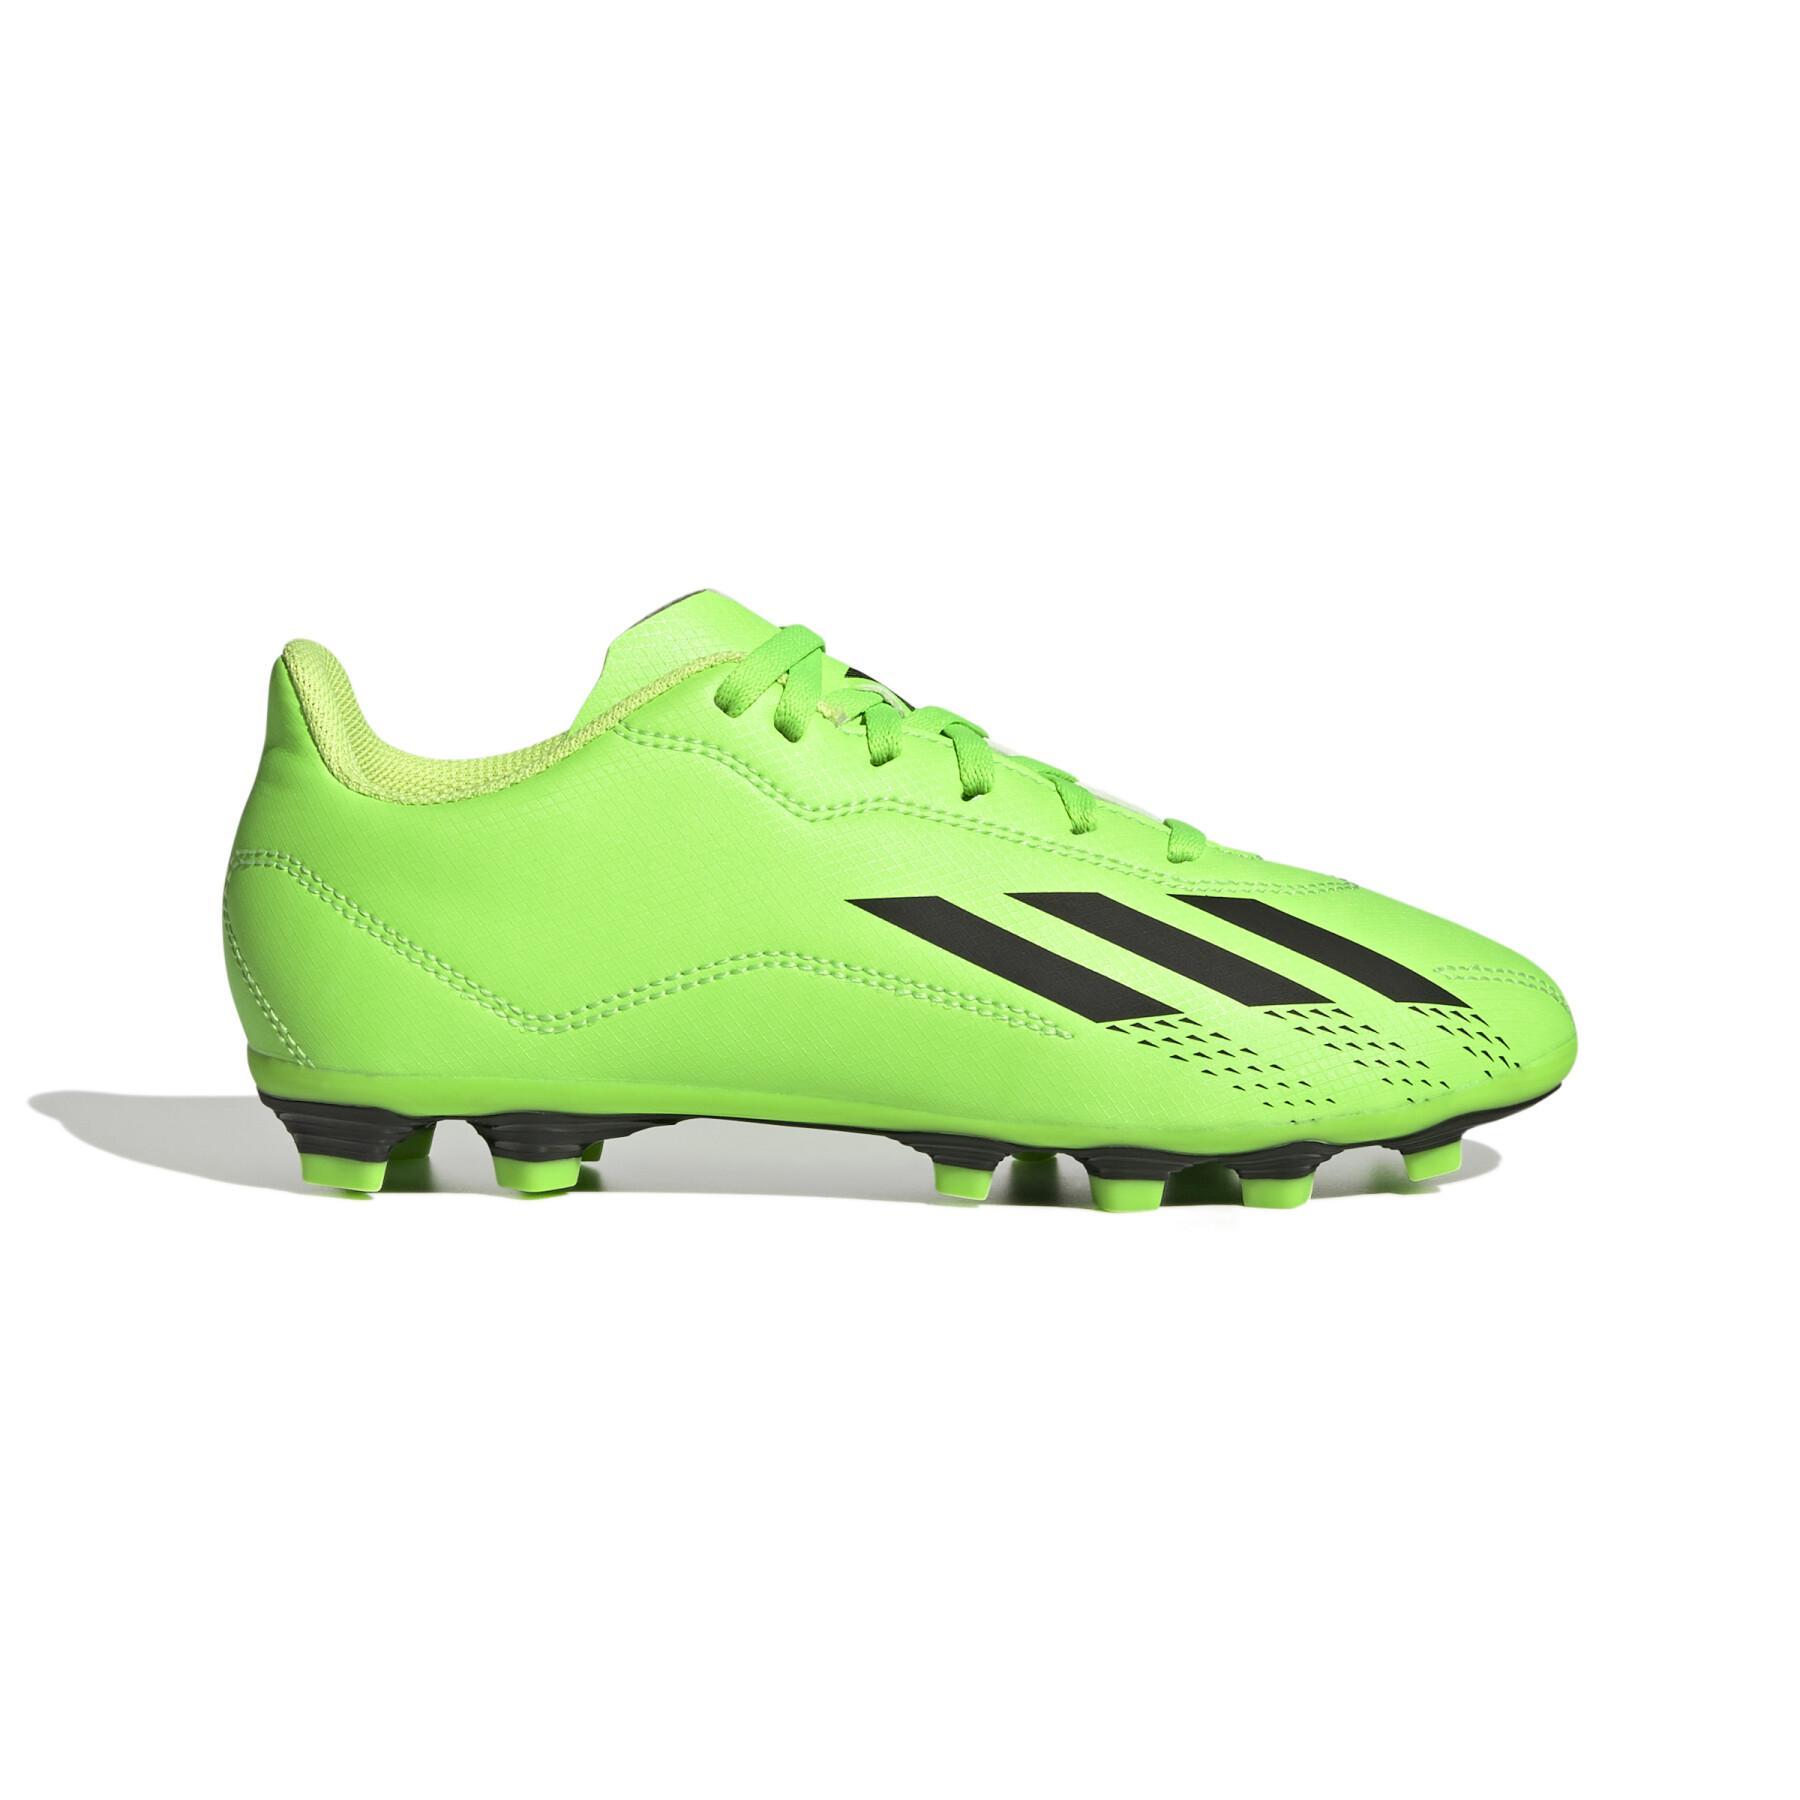 Sapatos de futebol para crianças adidas X Speedportal.4 MG - Game Data Pack